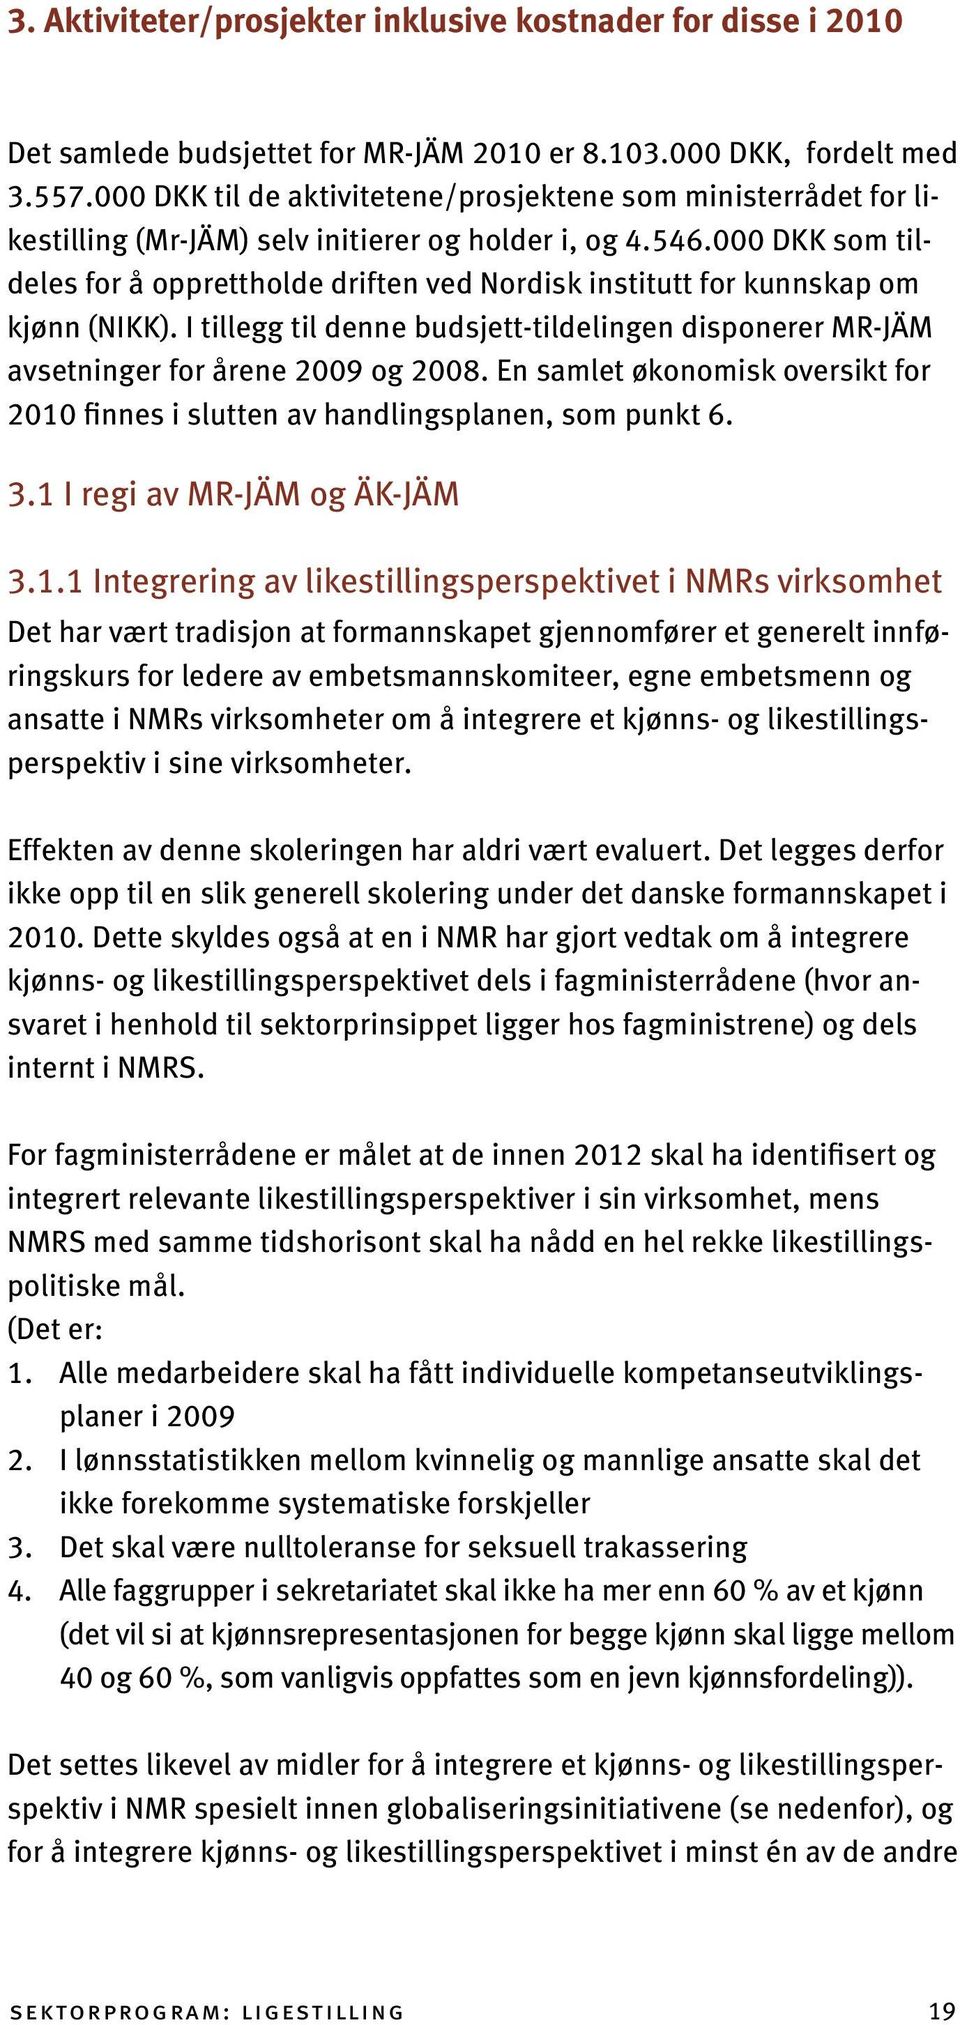 000 DKK som tildeles for å opprettholde driften ved Nordisk institutt for kunnskap om kjønn (NIKK). I tillegg til denne budsjett-tildelingen disponerer MR-JÄM avsetninger for årene 2009 og 2008.